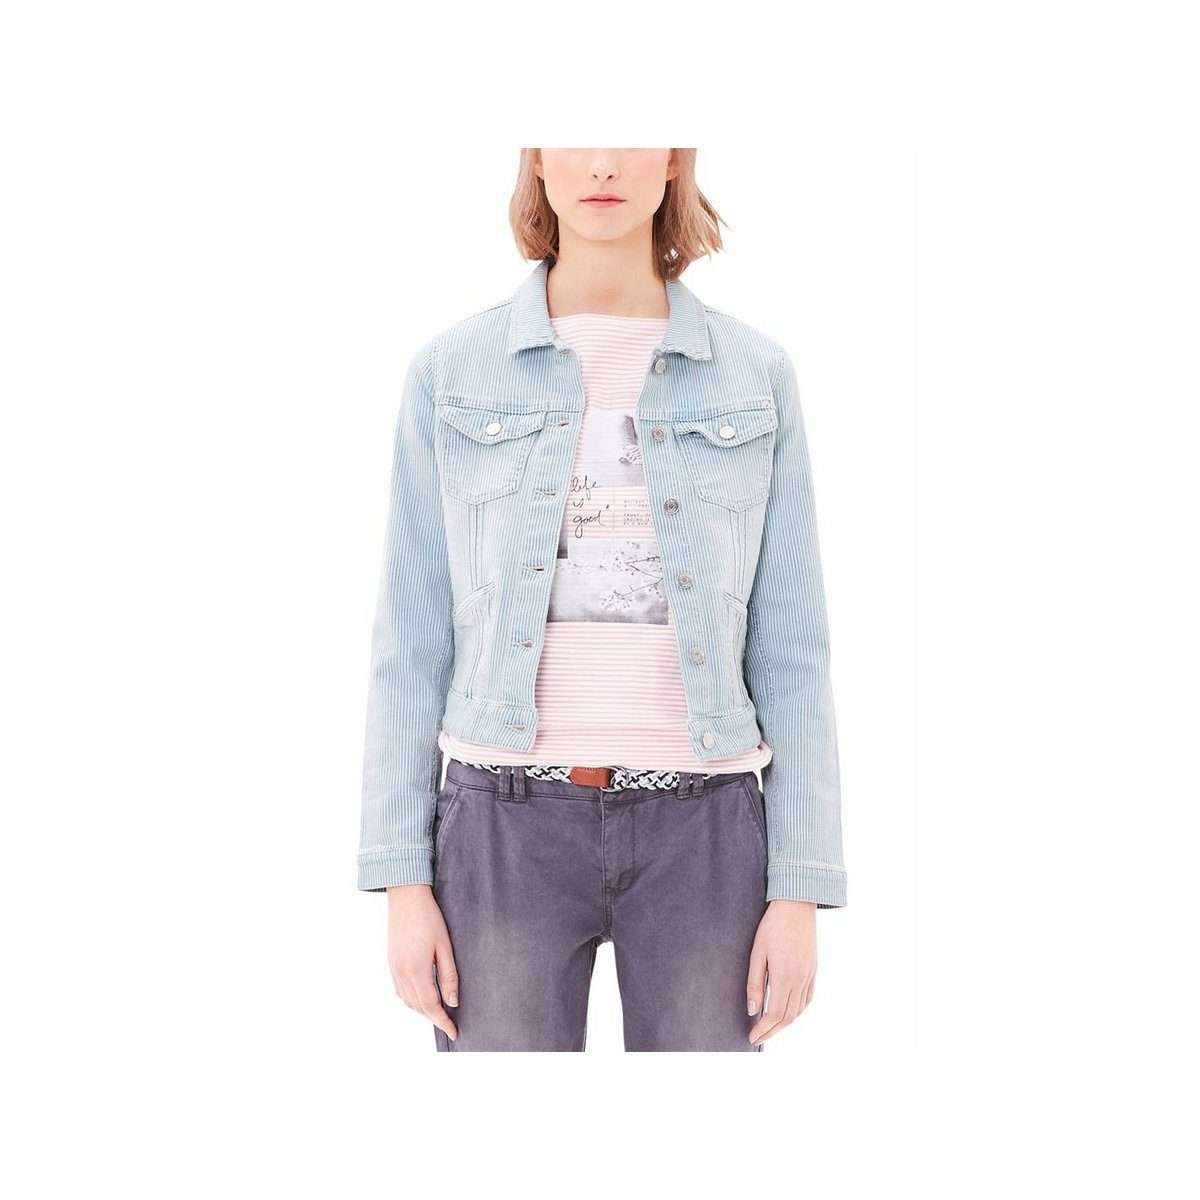 Джинсовая куртка, джинсовая куртка, модная женская весенняя куртка с полосатым рисунком, куртка для отдыха синего/белого цвета.